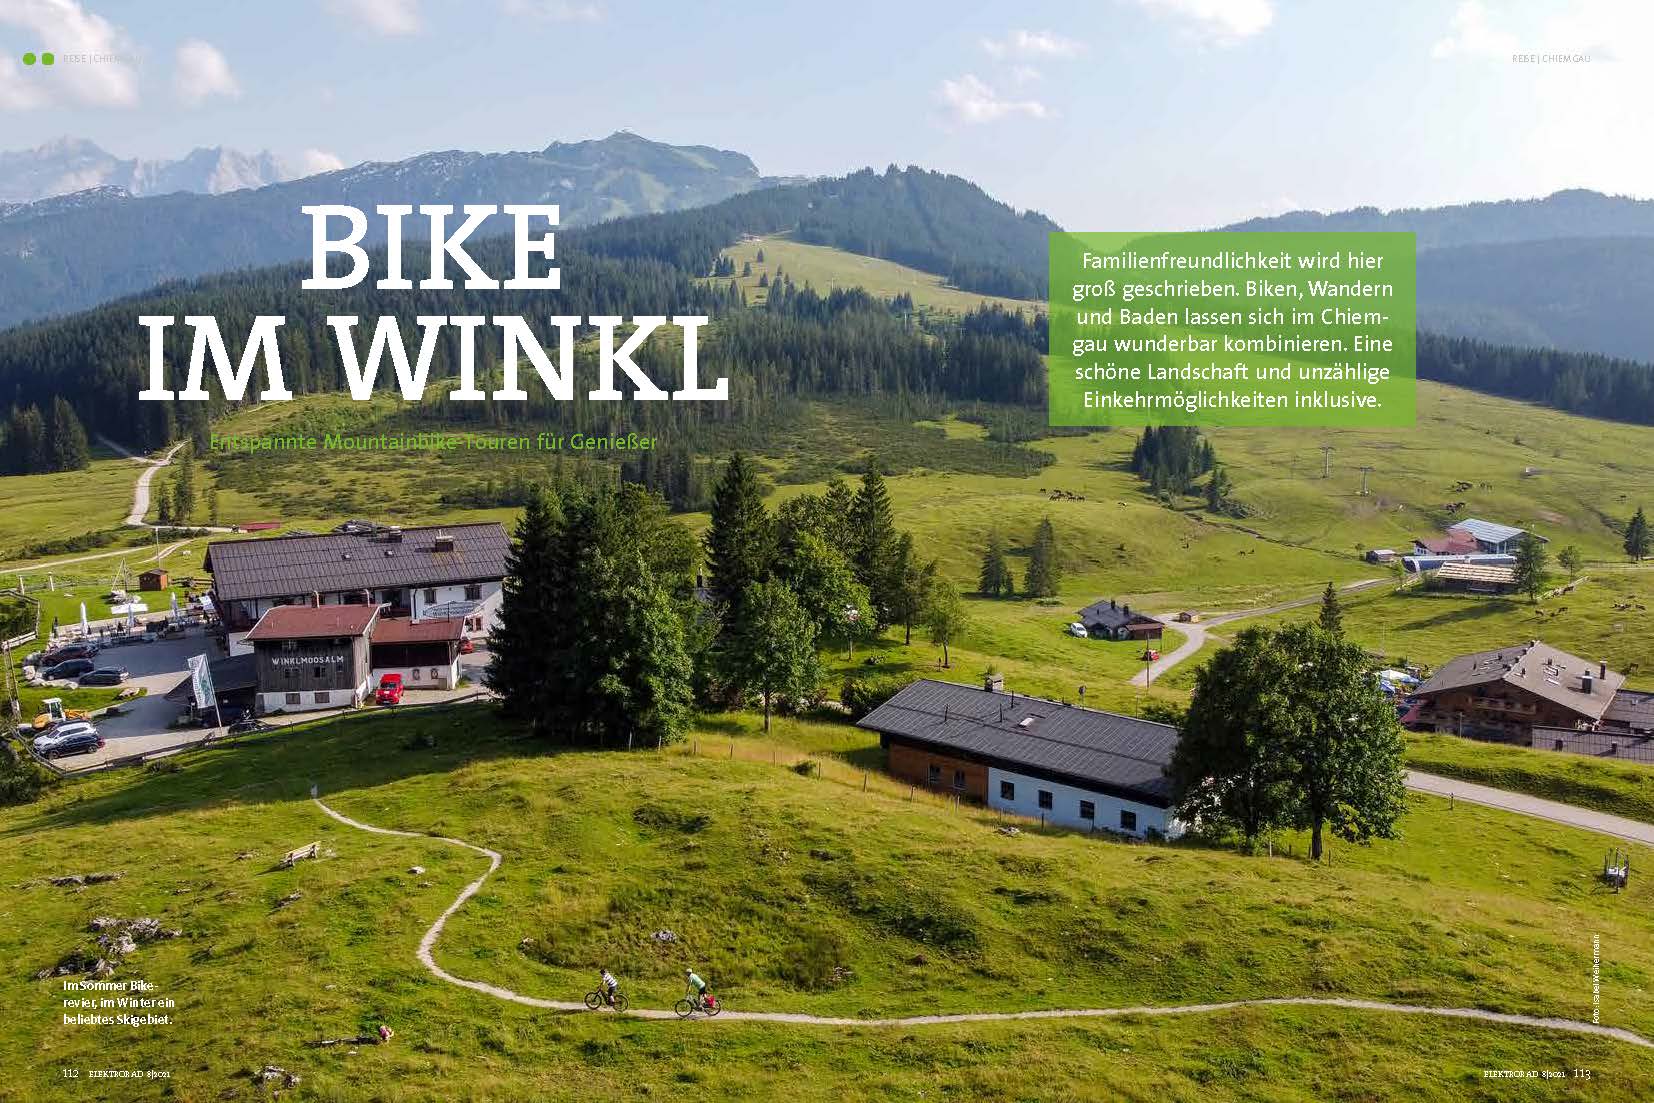 900 Kilometer beschilderte Bikerouten gibt's im Chiemgau